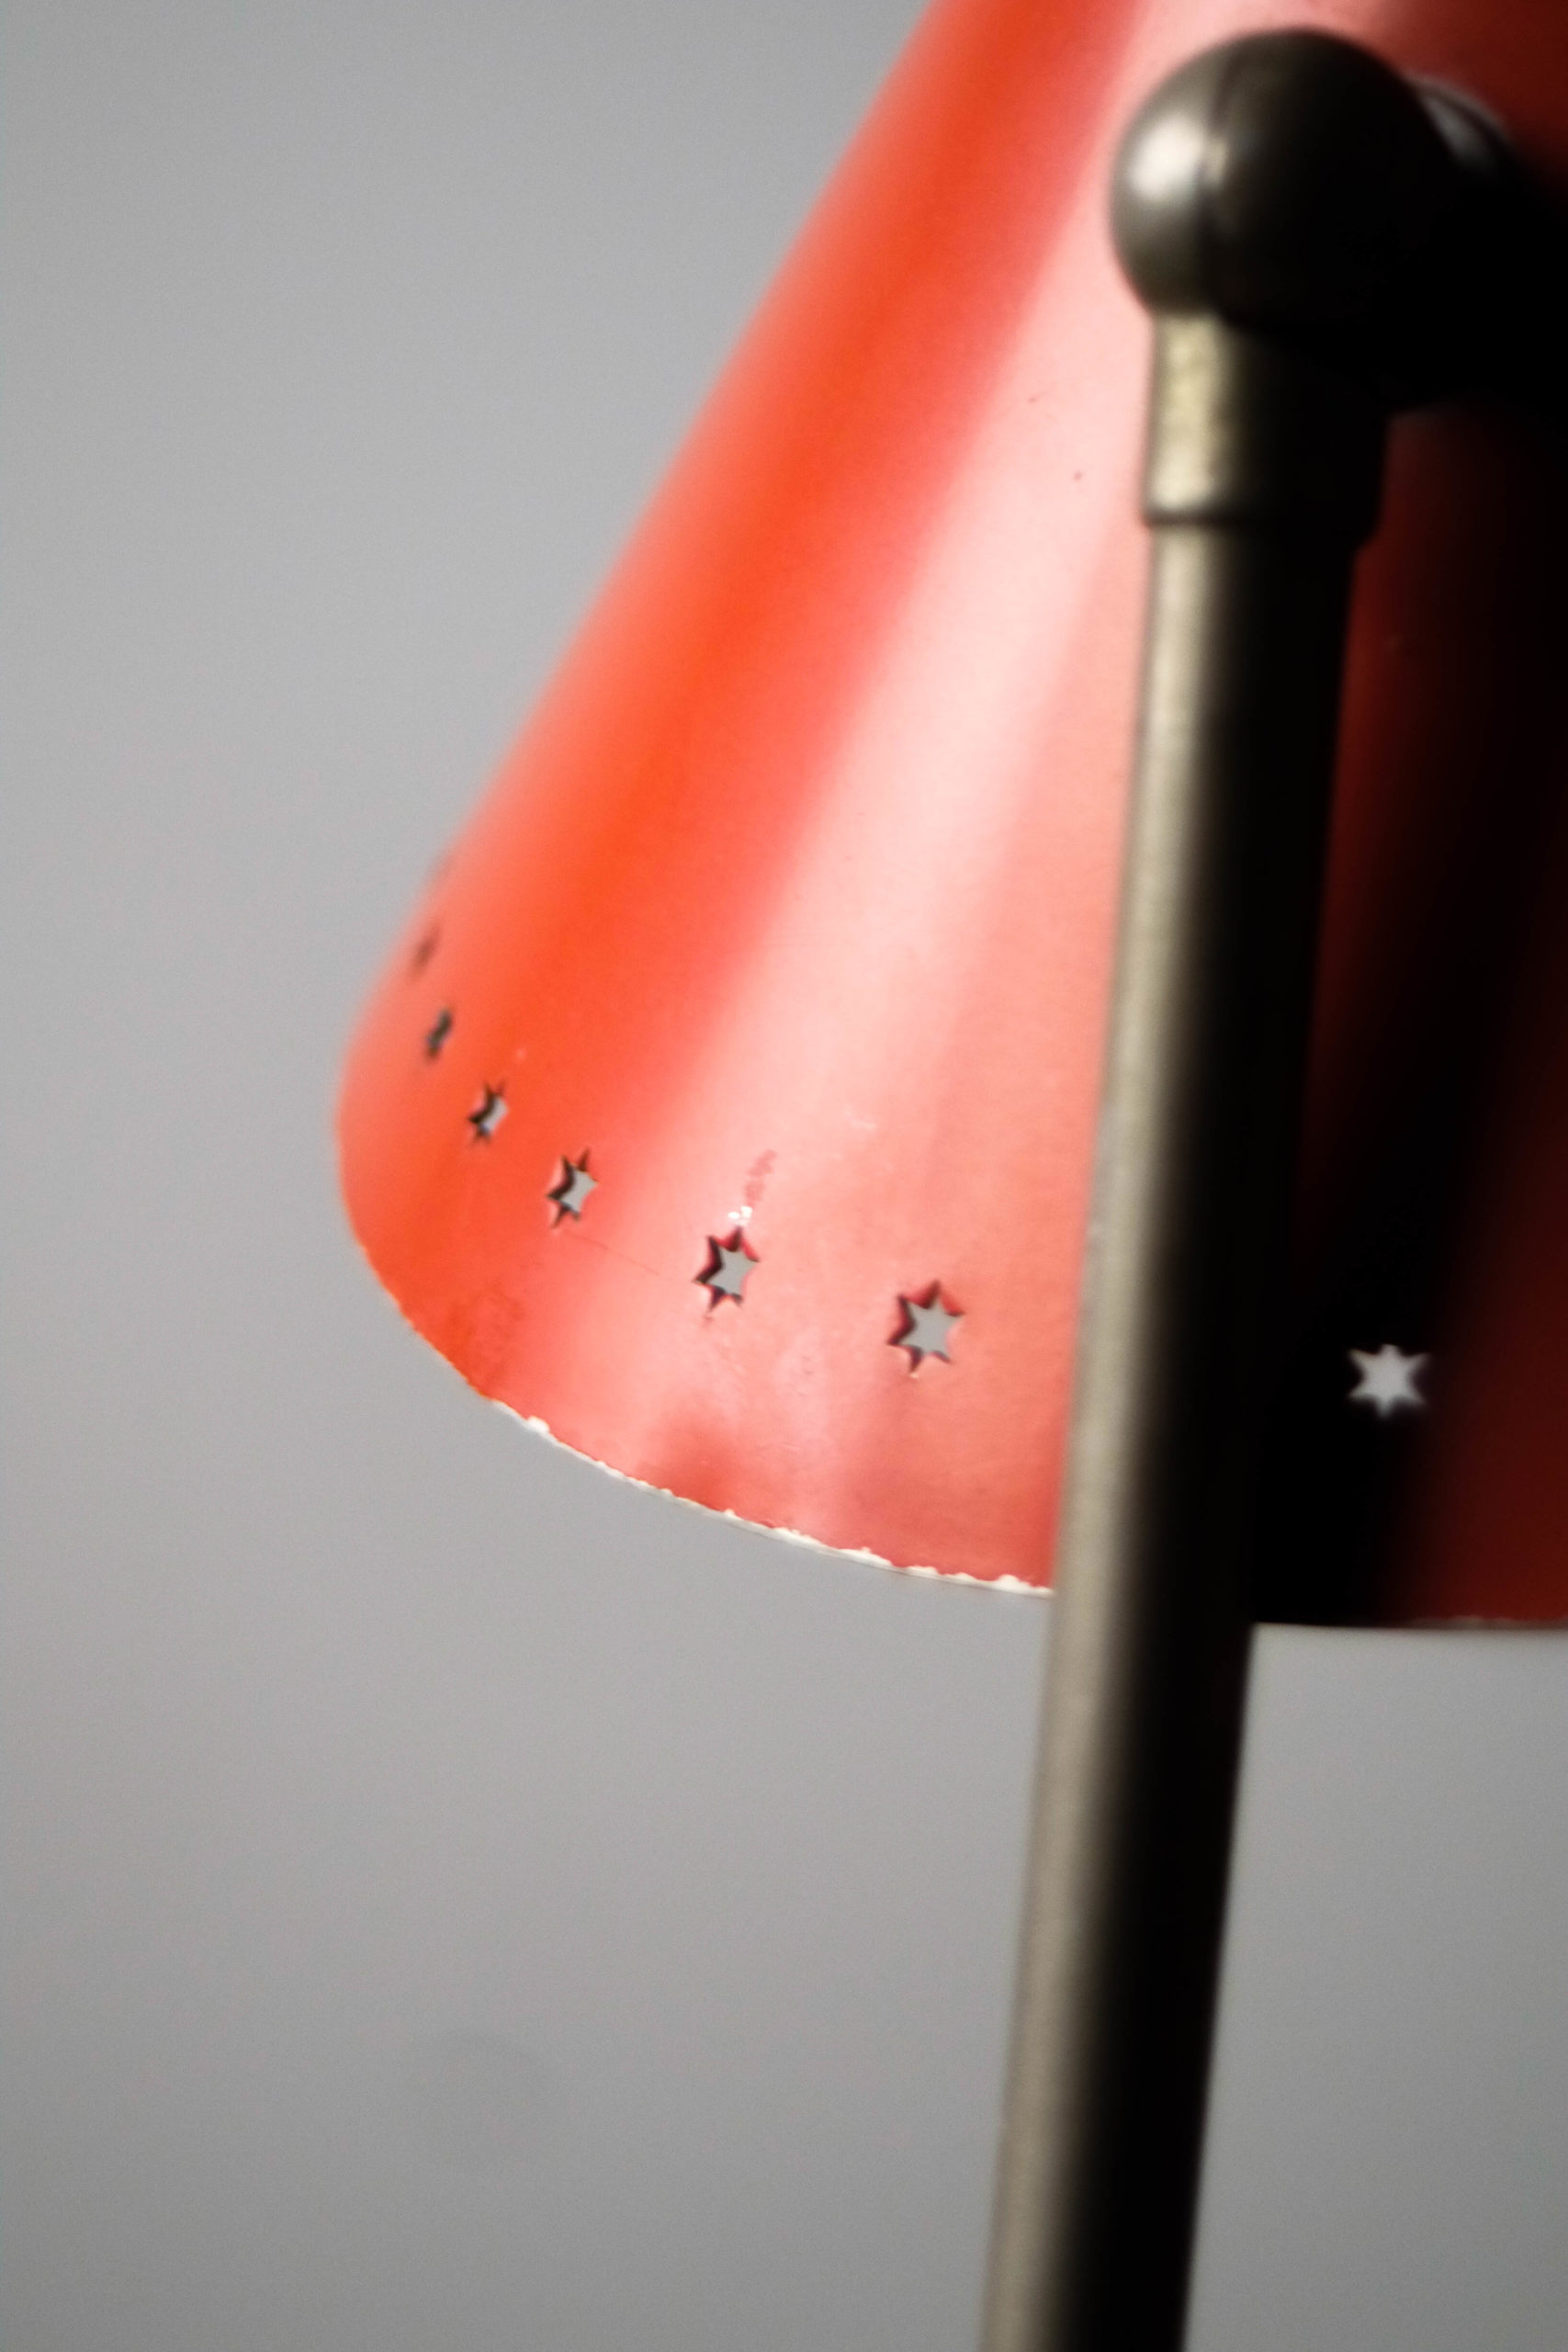 lámpara de mesa años 60 rojo metálica ajustable